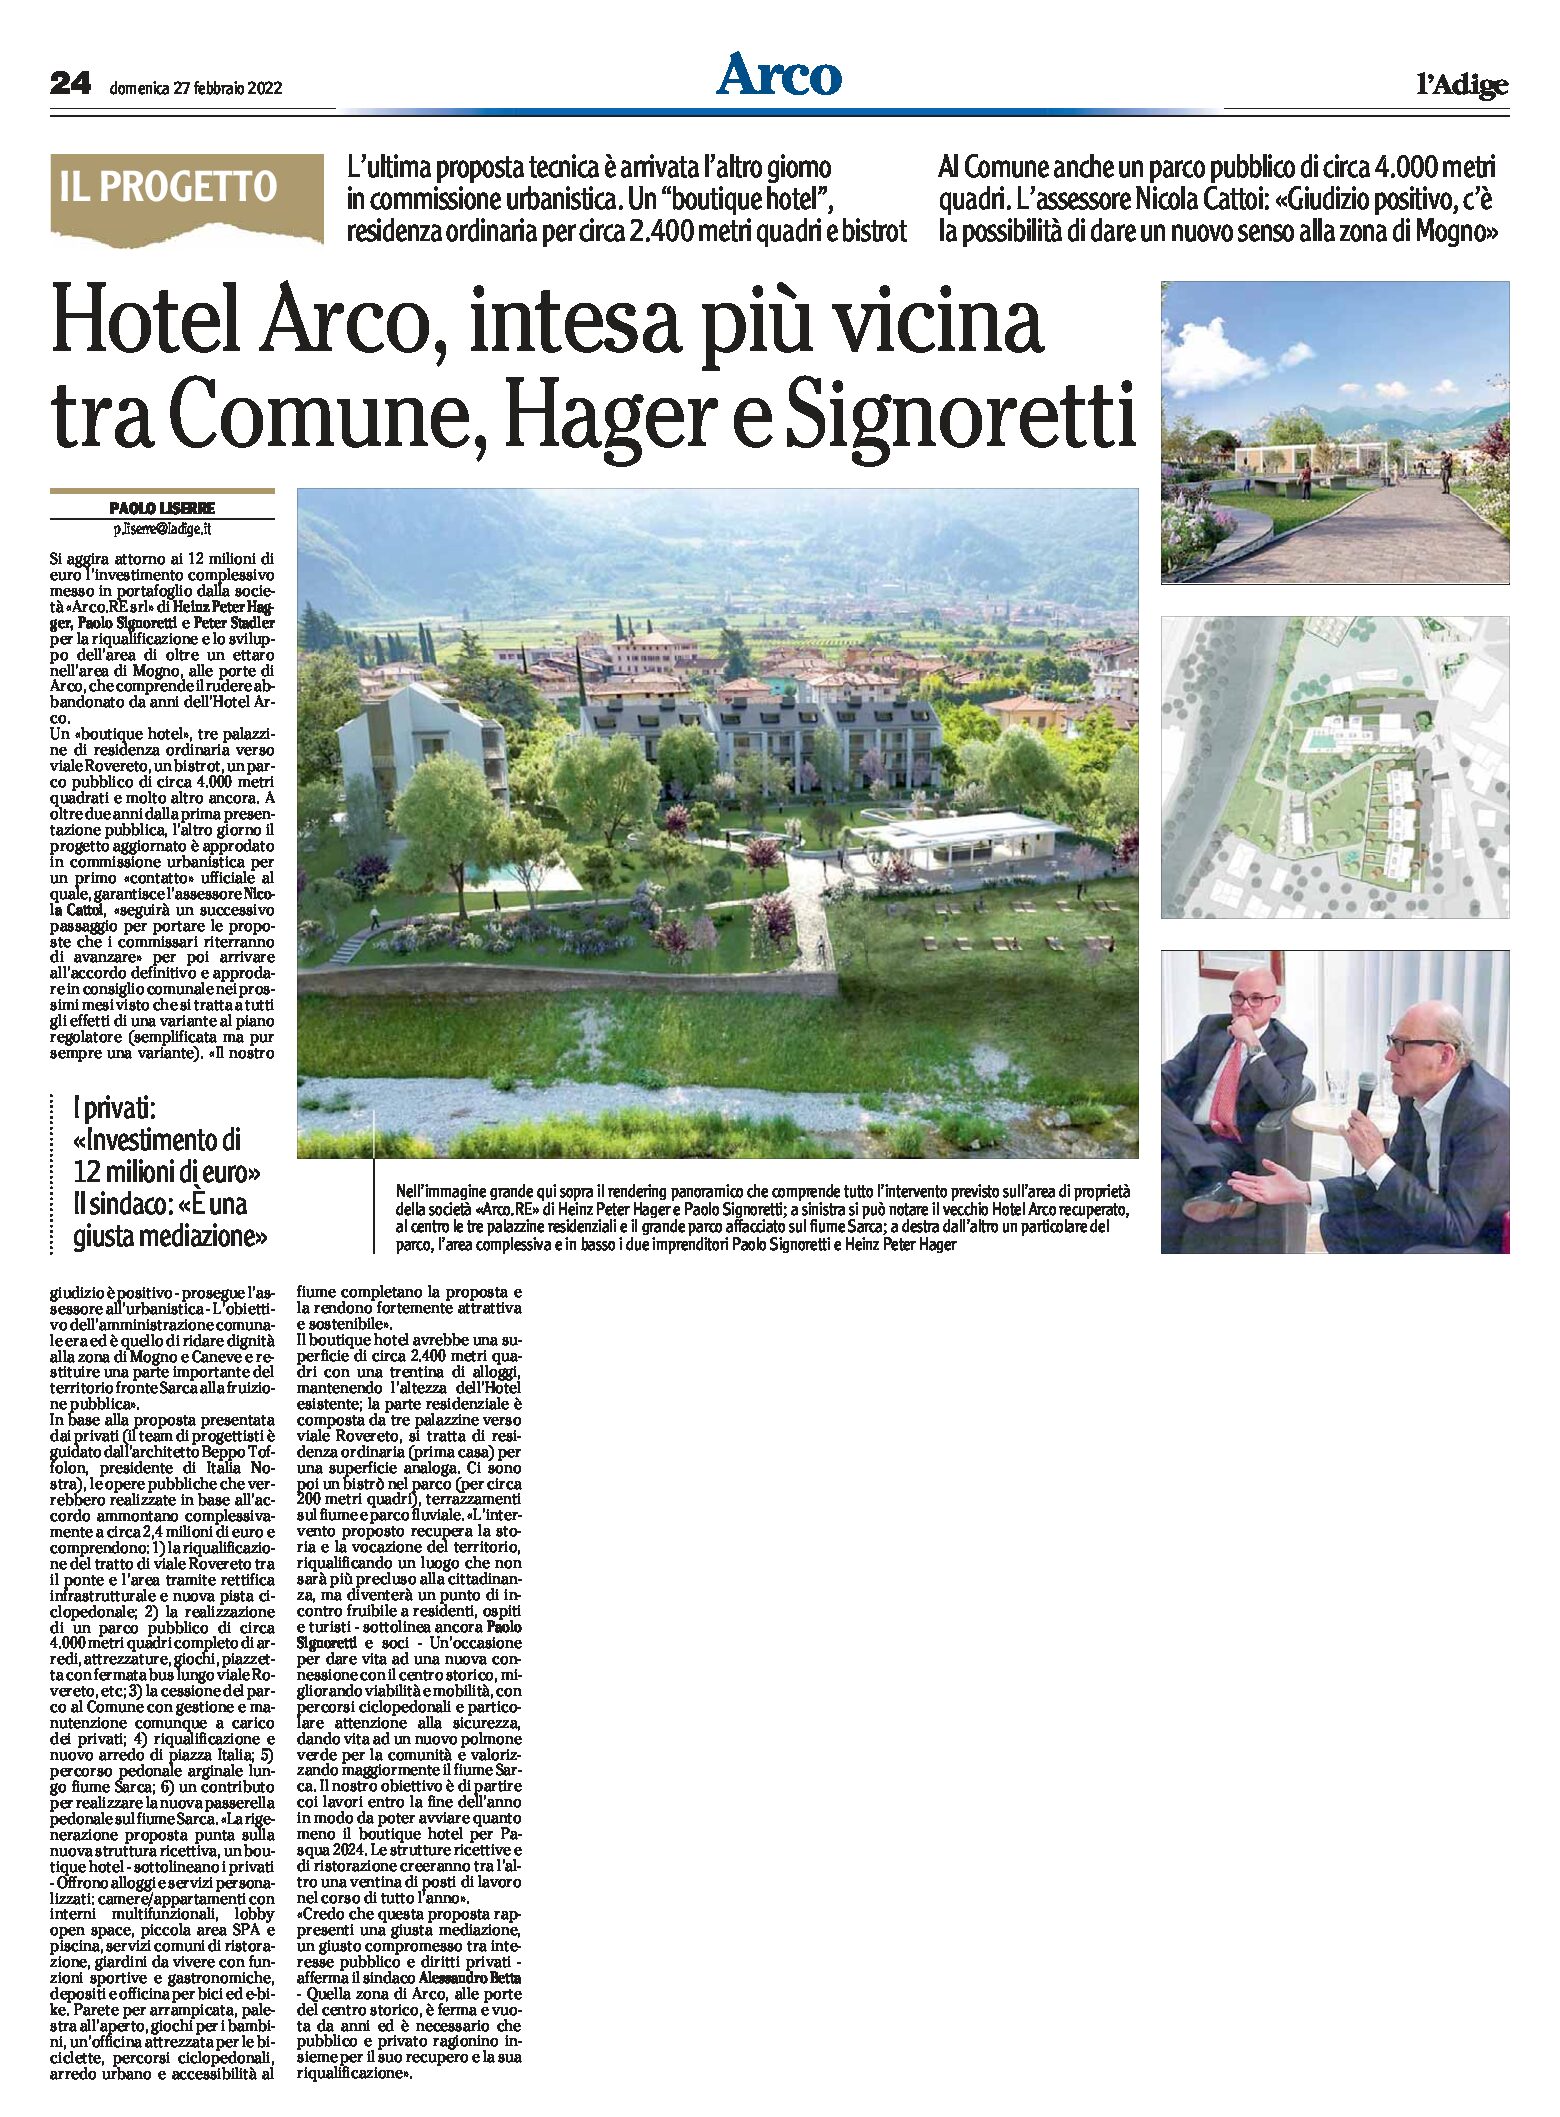 Hotel Arco: intesa più vicina tra Comune Hager e Signoretti